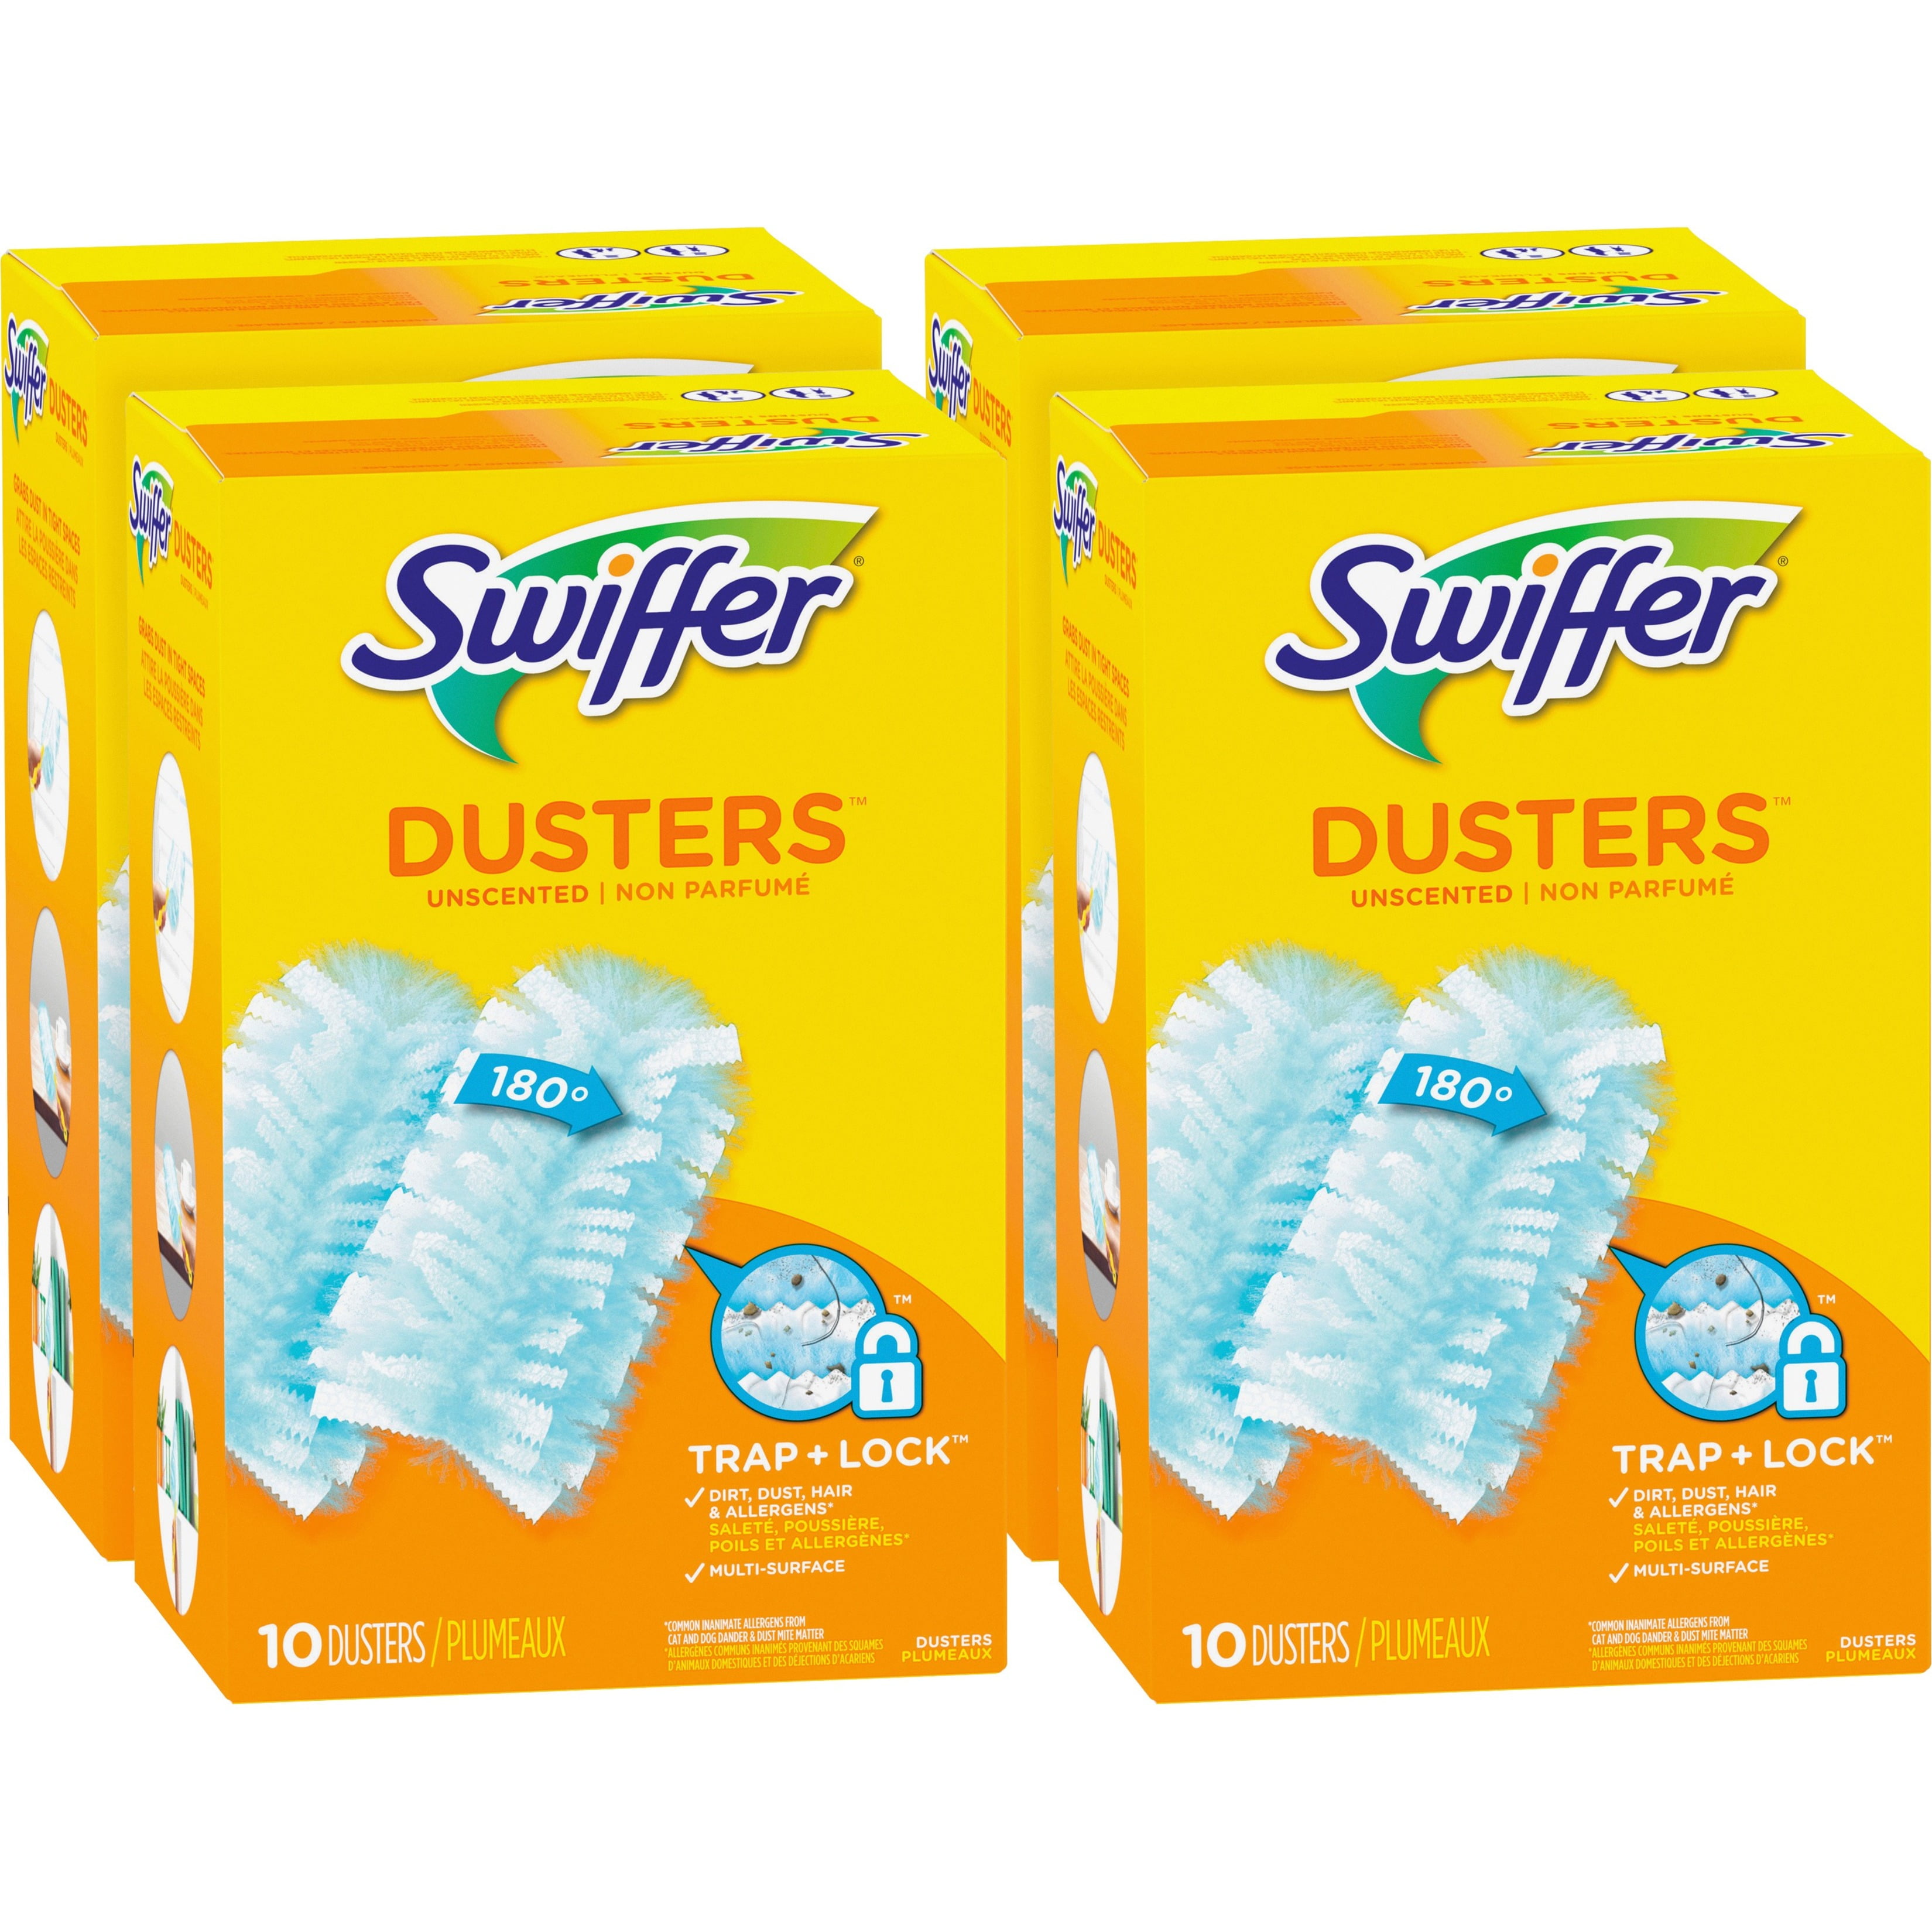 Swiffer Dusters Refills - Walmart.com